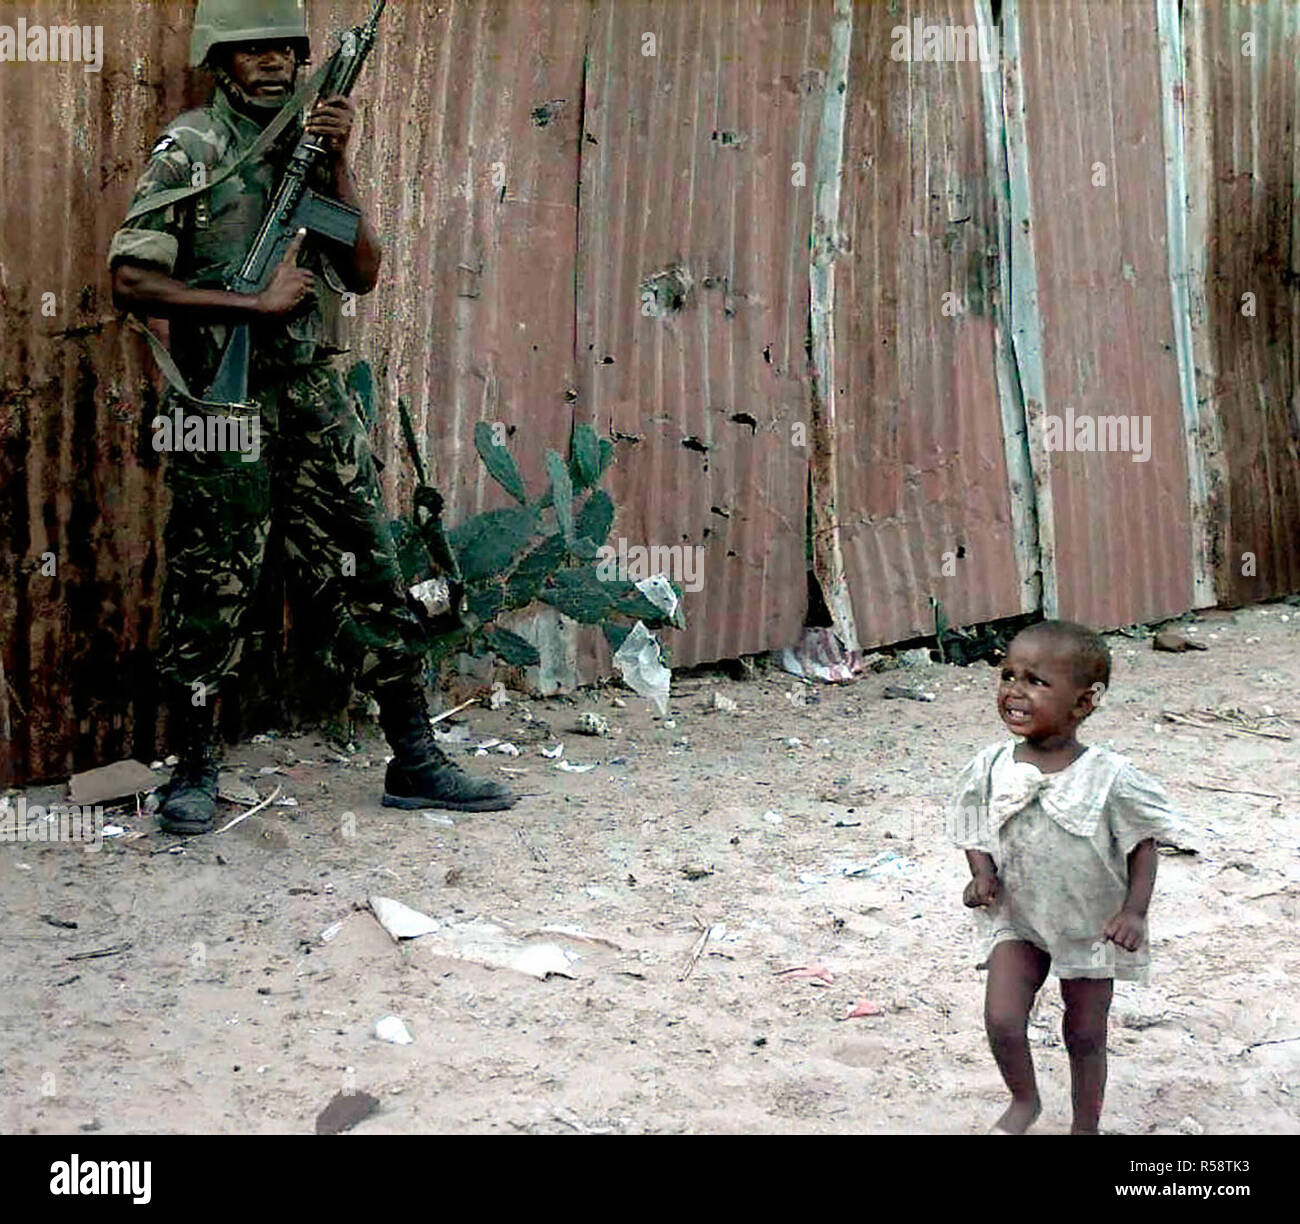 1993 - un pianto toddler somalo passeggiate passato un Botswana Defence Force soldato durante un raid di armi sul mercato Bakara. Il Soldato punti a 7.62mm FN-FAL belga fucile realizzato, nell'aria. Questa missione è a diretto sostegno di Restore Hope. Foto Stock